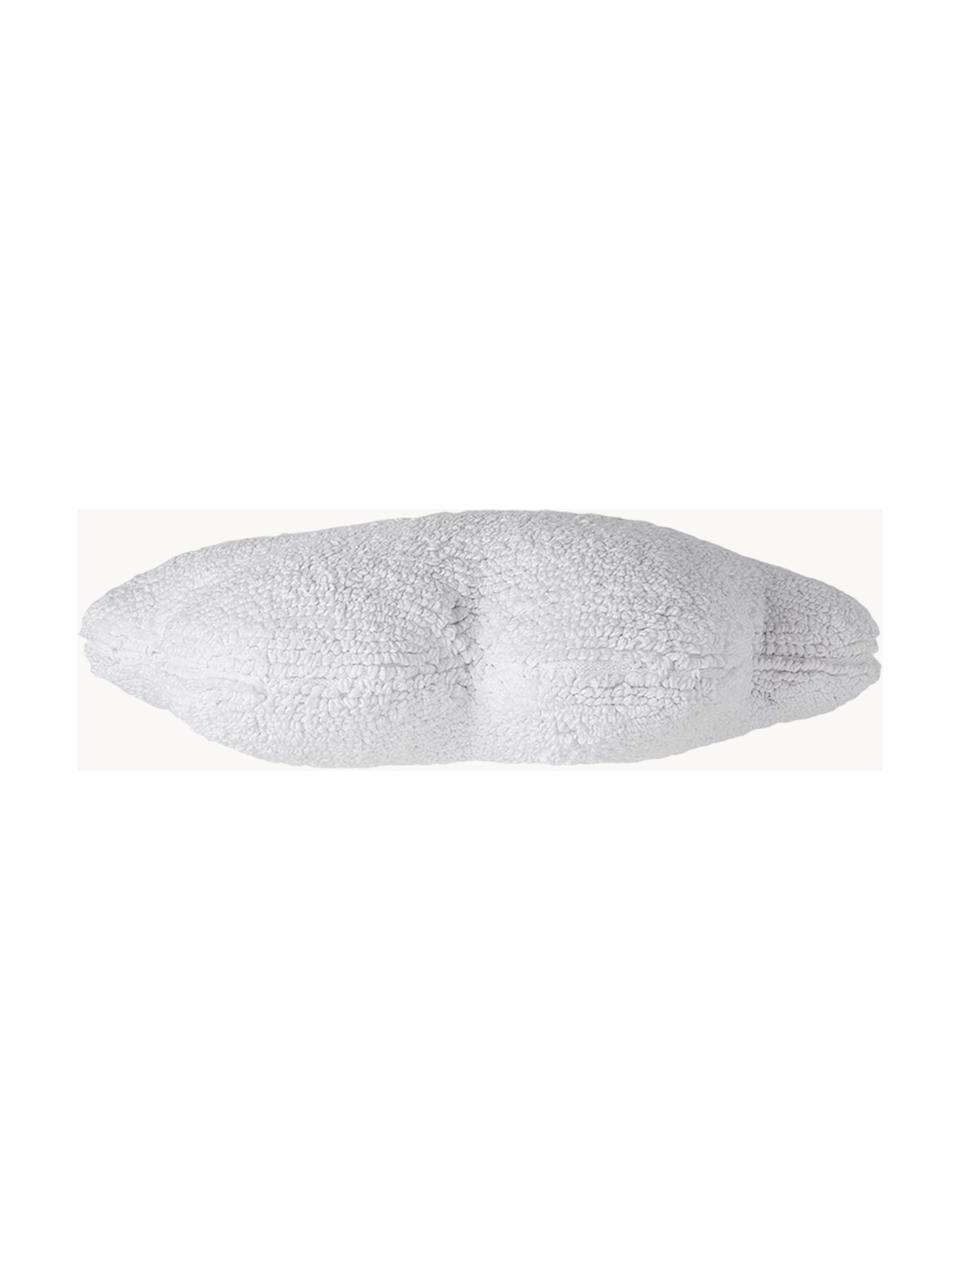 Cuscino morbido in cotone fatto a mano Cloud, Custodia: 97% cotone, 3% fibra sint, Bianco, Larg. 52 x Lung. 42 cm